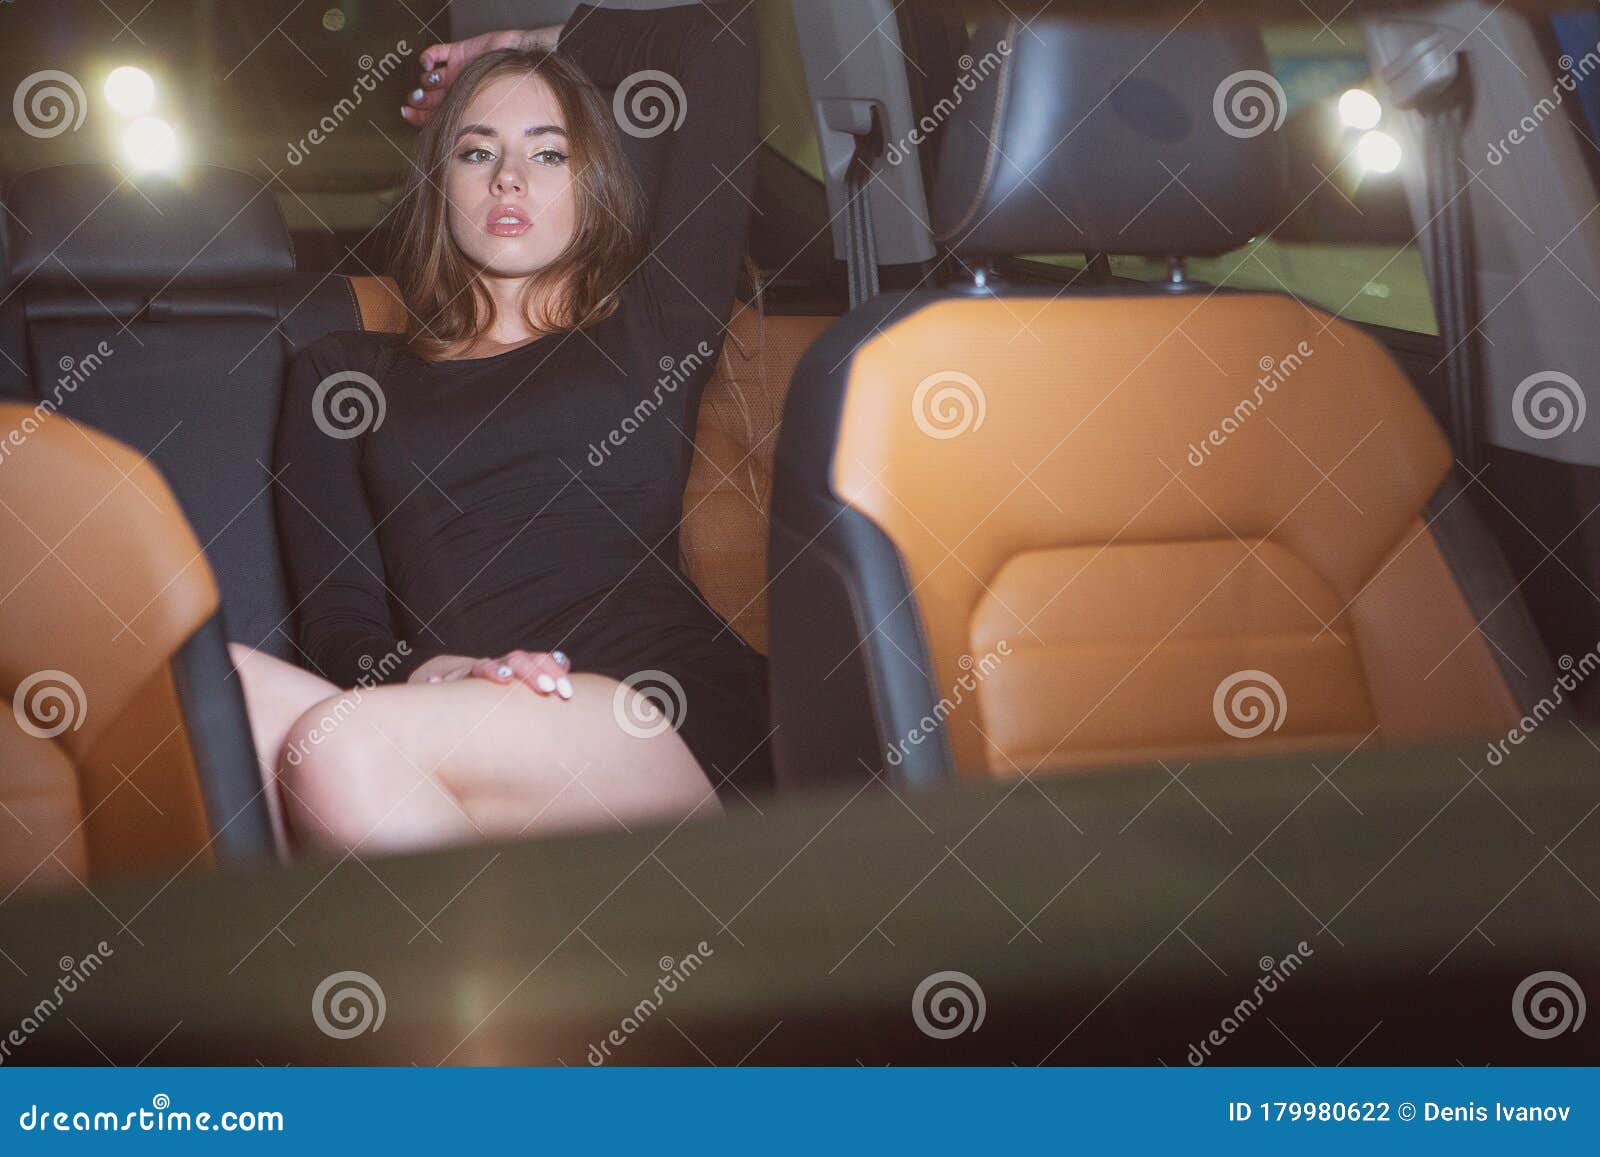 Голая Девушка На Заднем Сиденье Автомобиля (5 Фото)